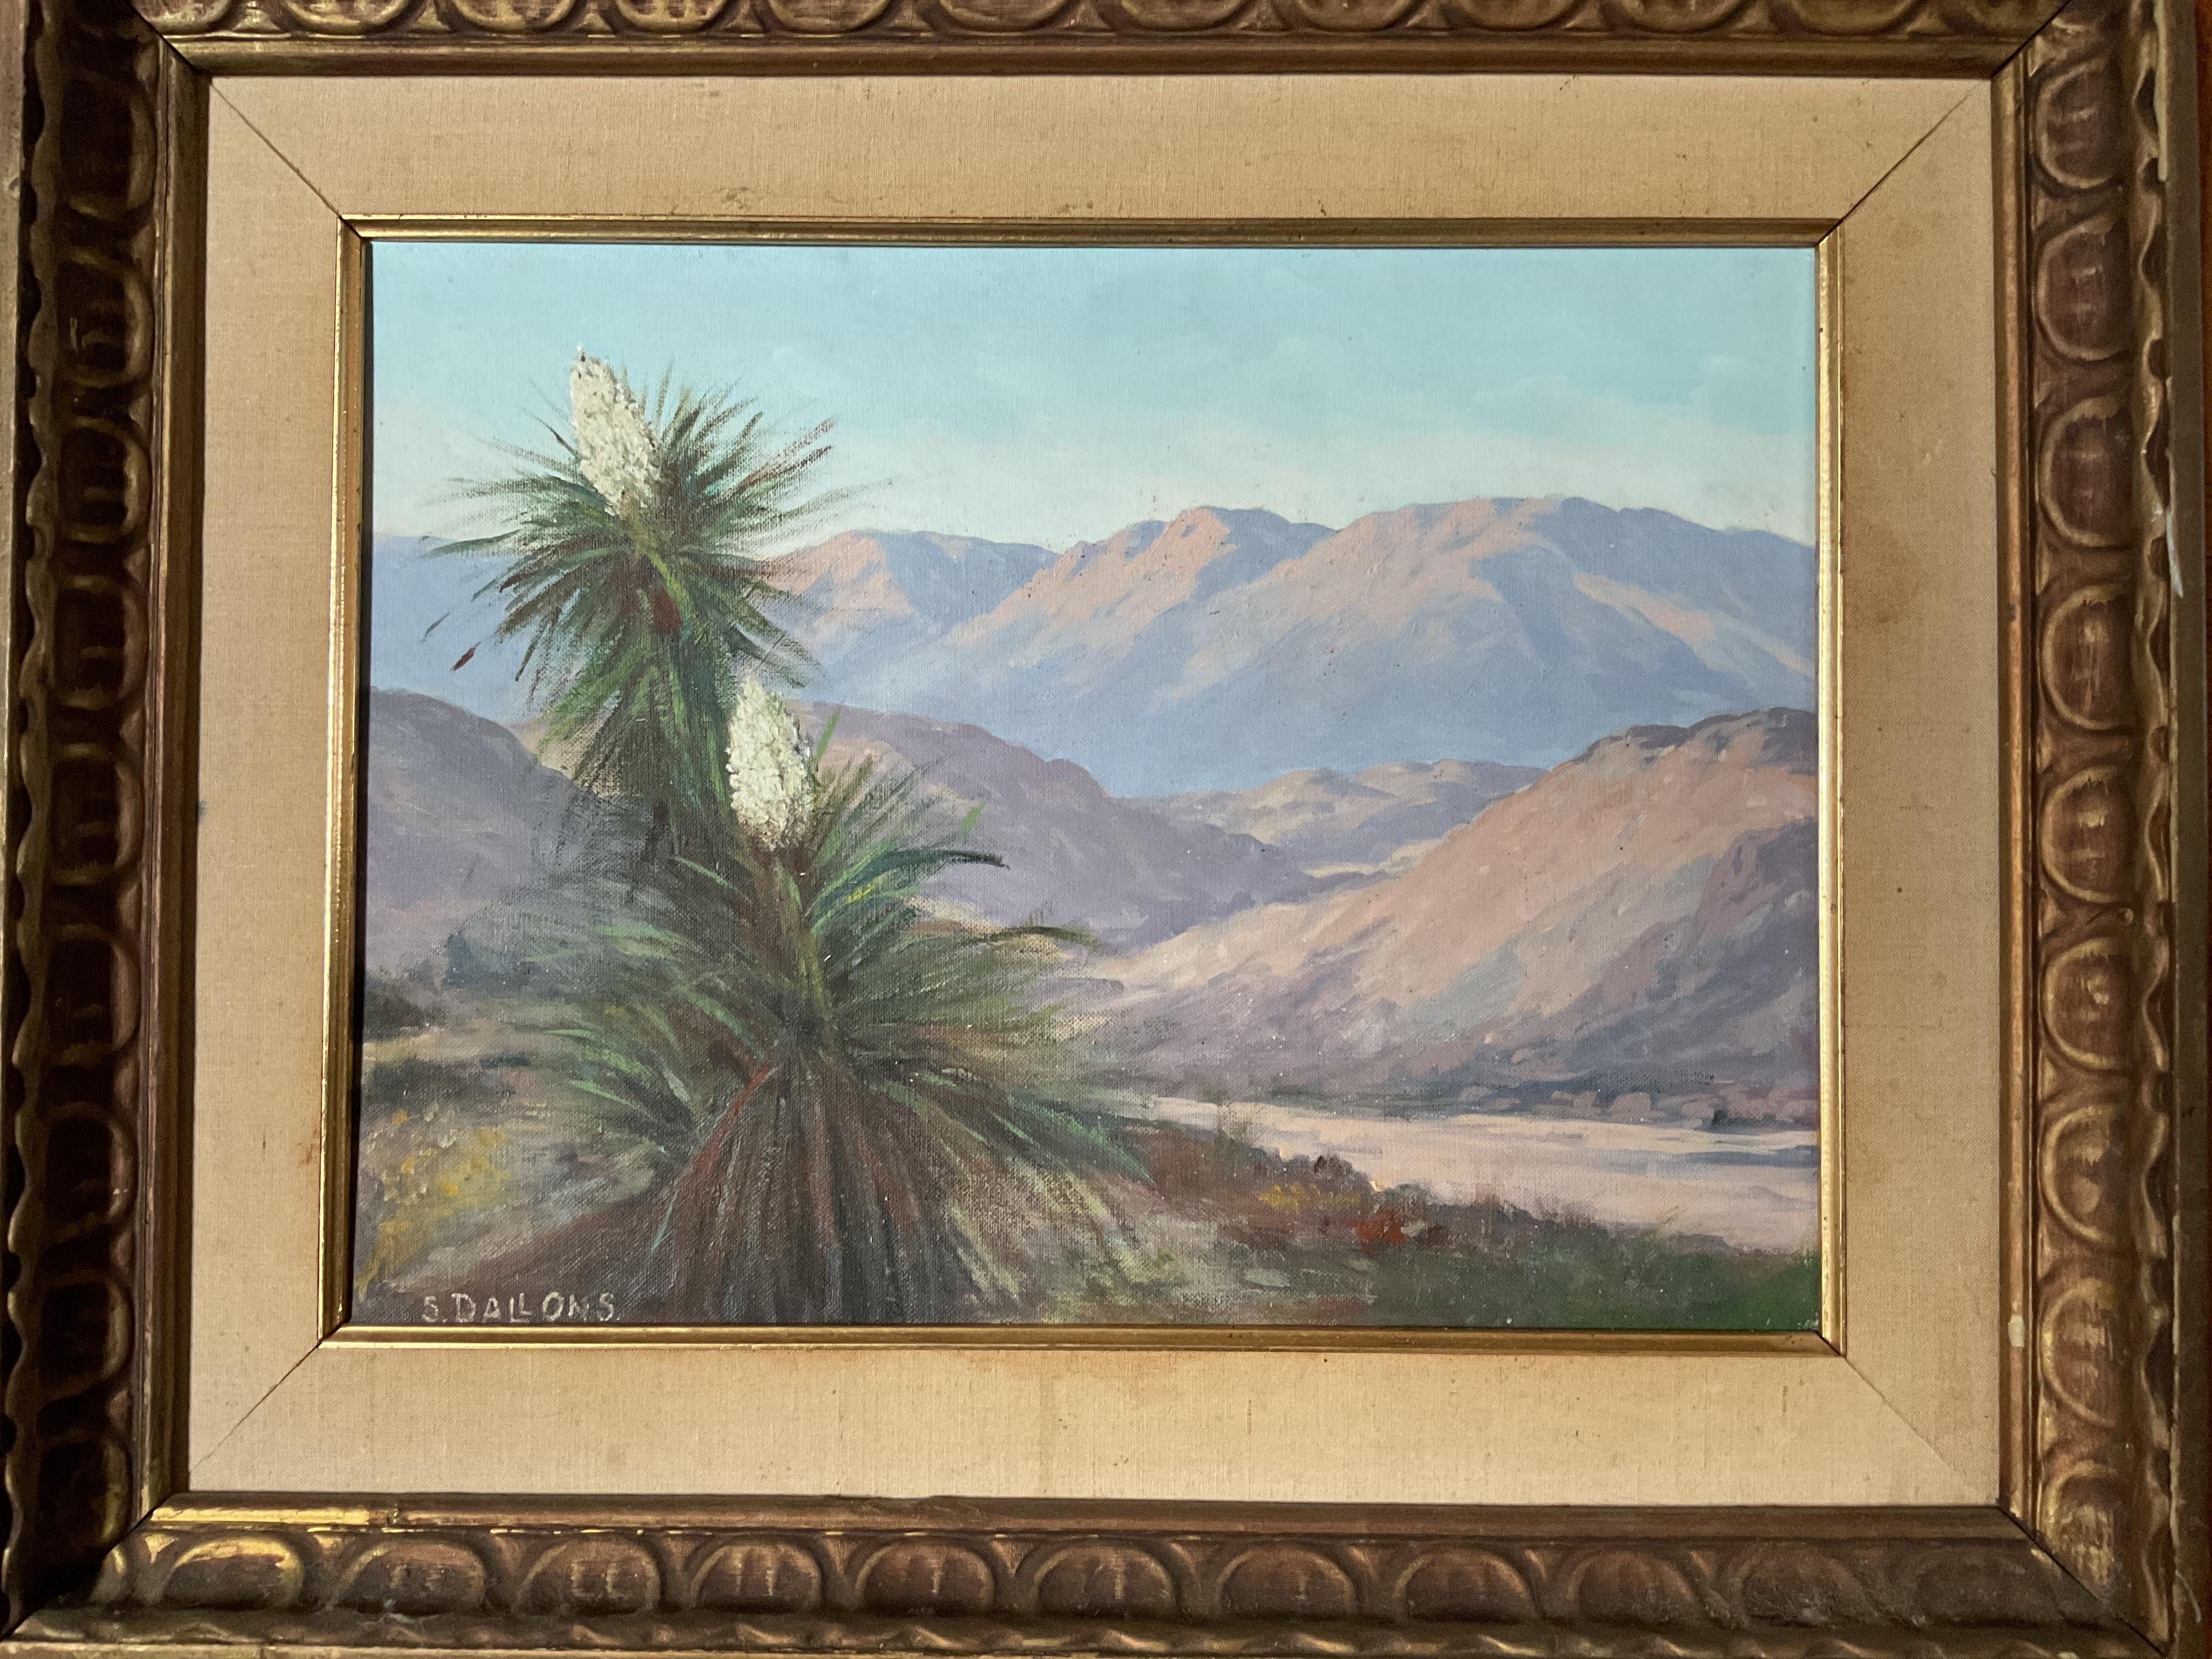 Dies ist ein ungewöhnliches Gemälde eines Canyons in der Gegend von Palm Springs in Südkalifornien.  Im Vordergrund ist eine blühende einheimische Pflanze zu sehen, mit einer schönen Nahaufnahme.  Betrachten Sie es als ein Porträt in einer